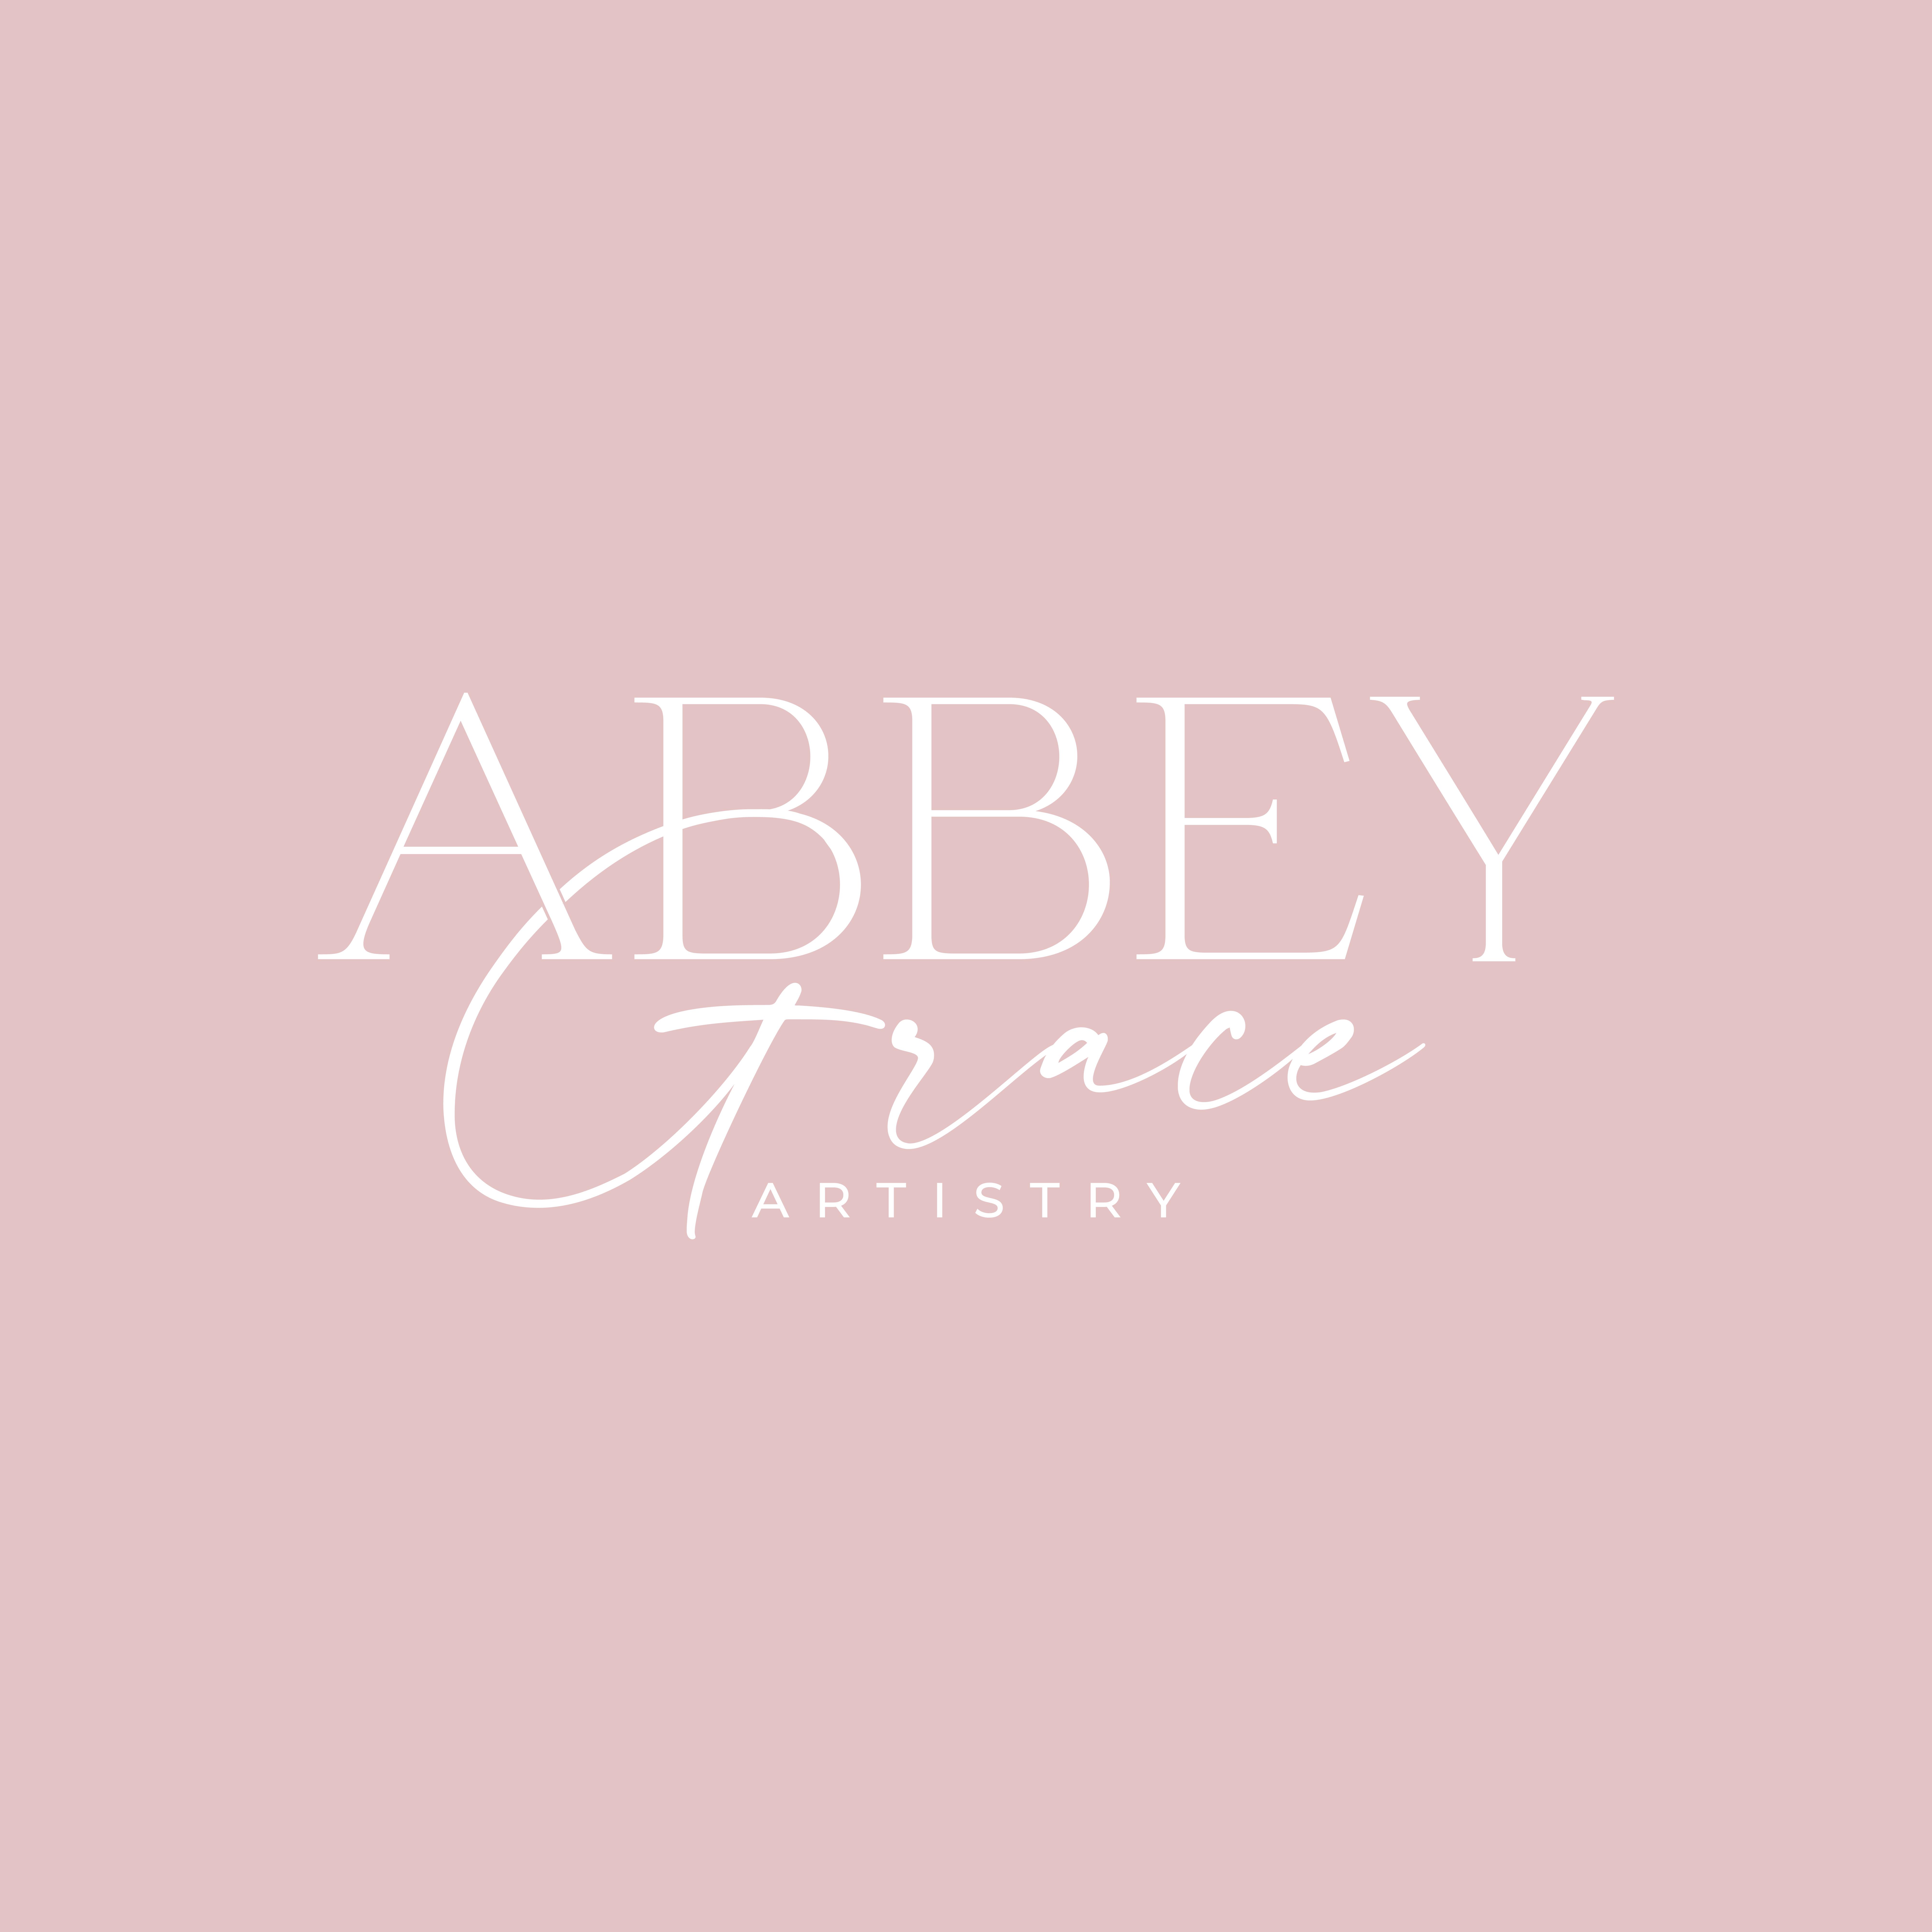 Abbey Grace Artistry